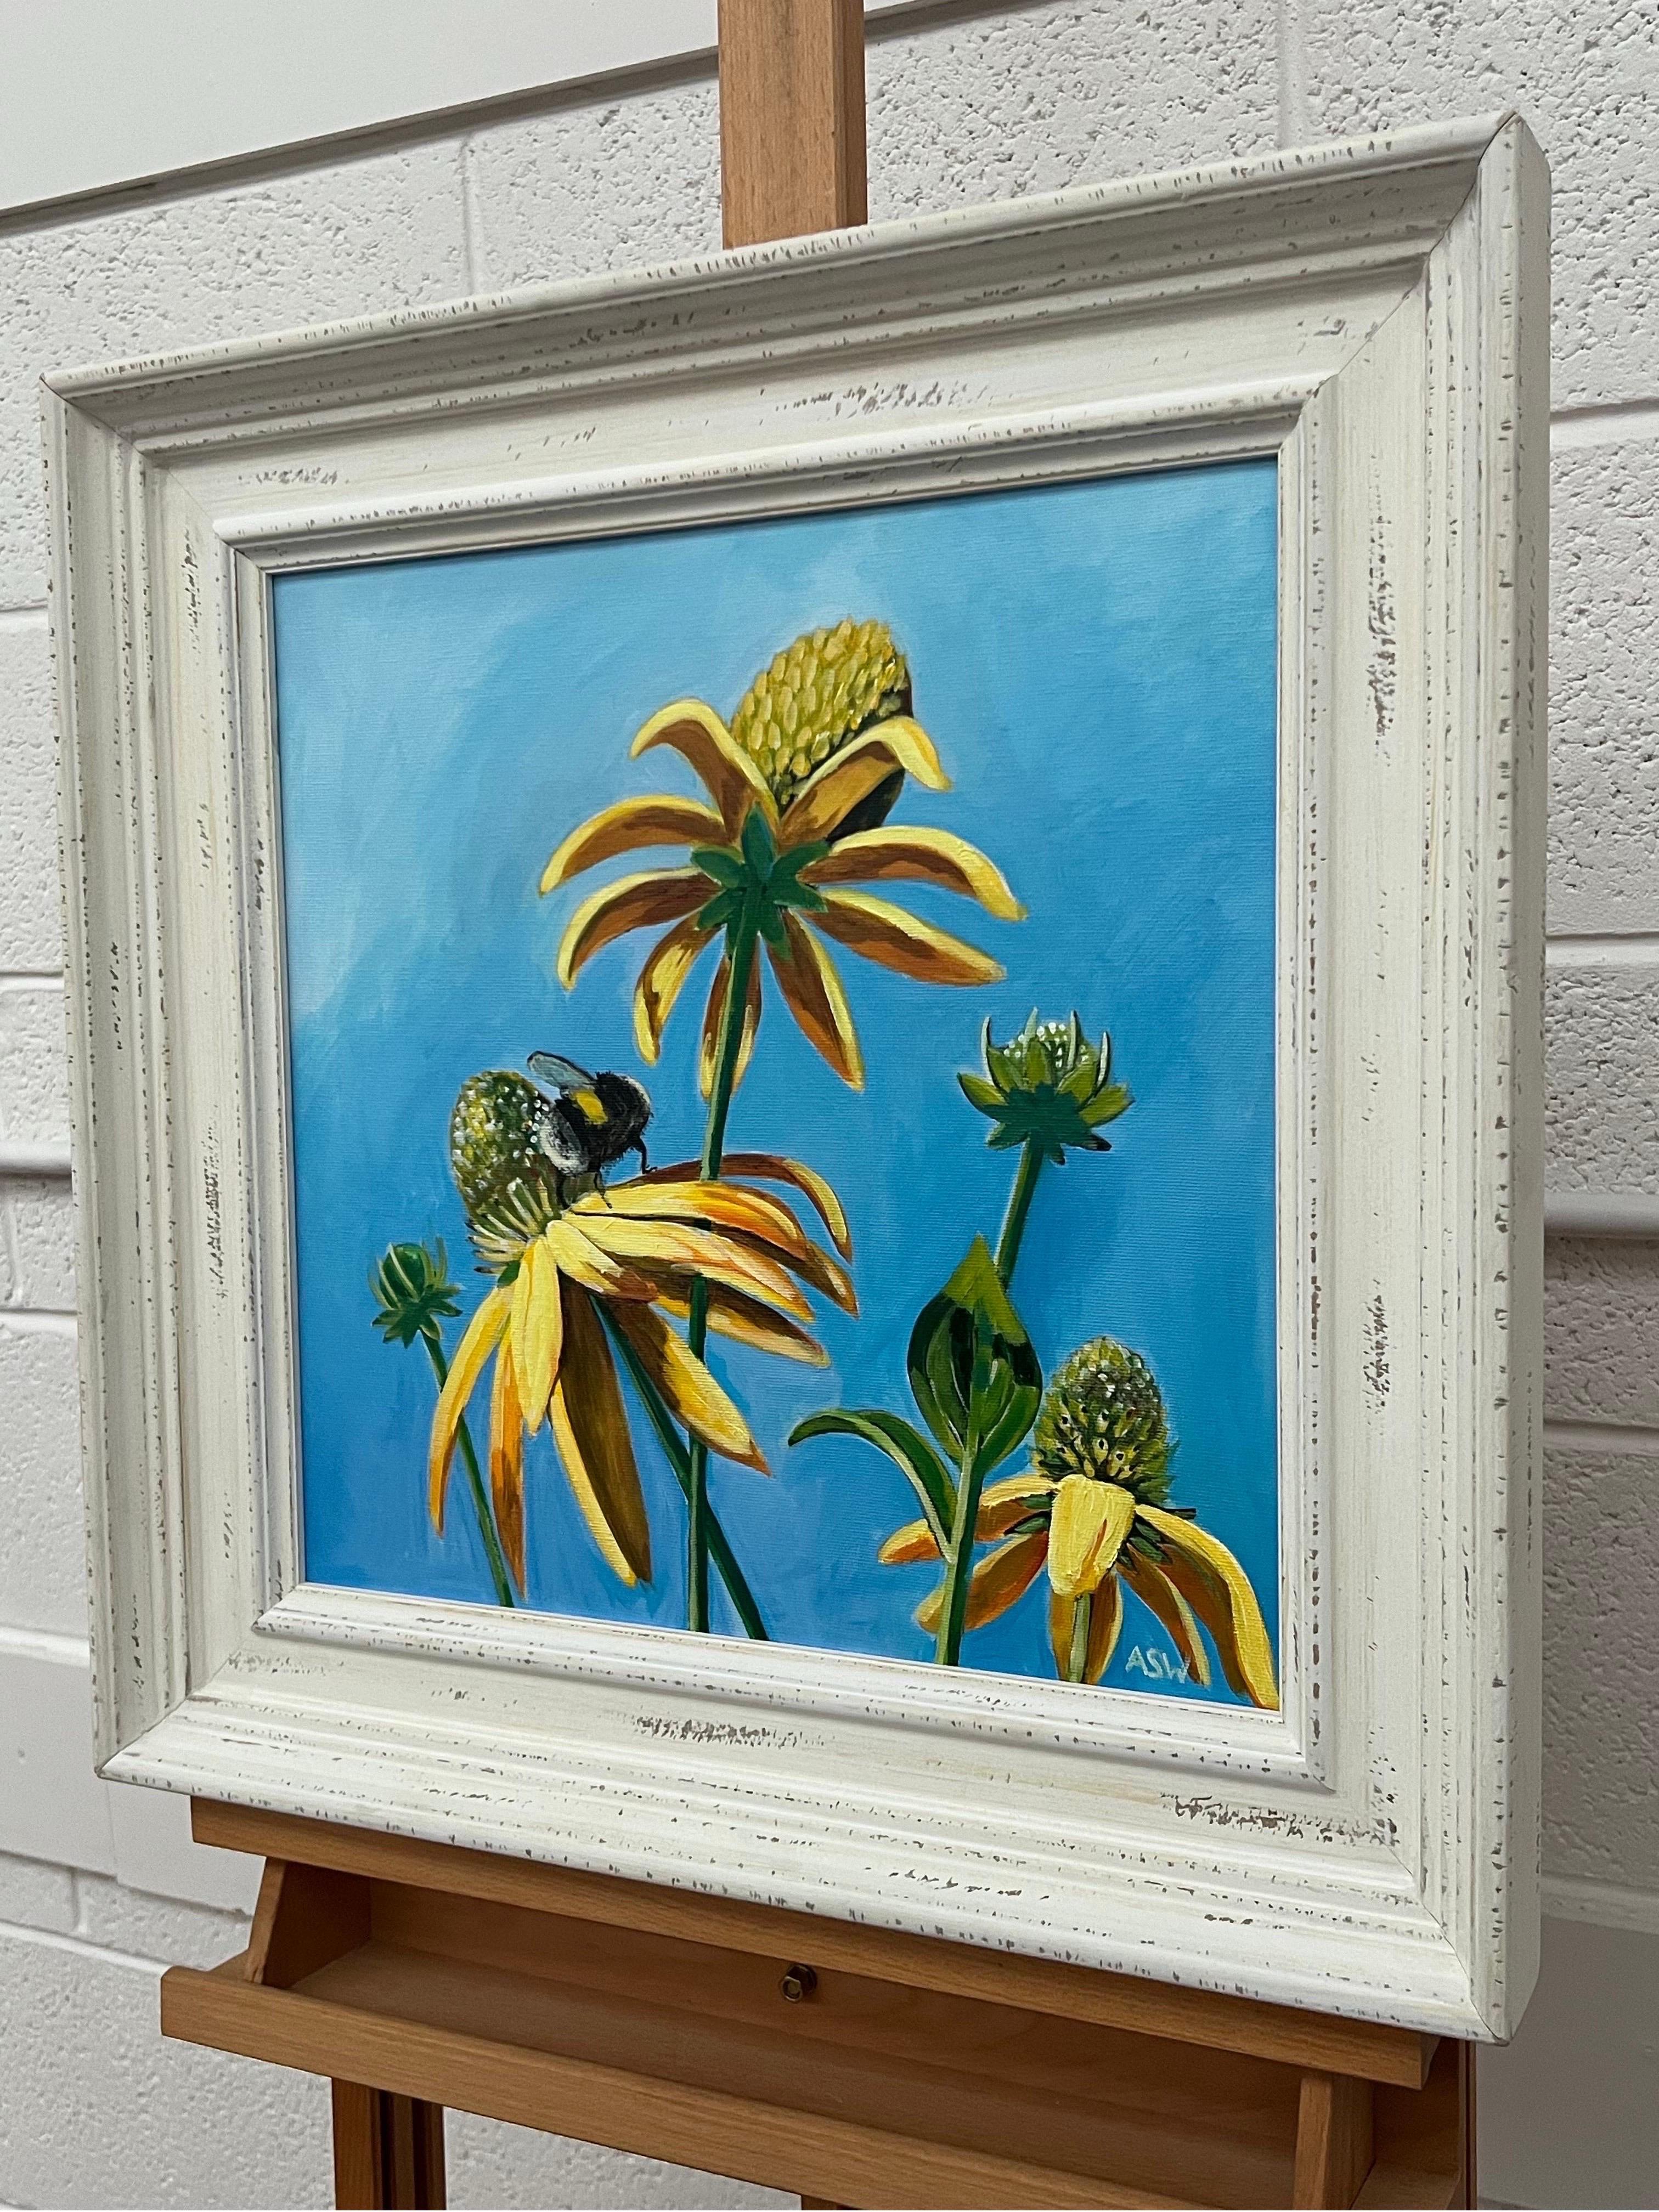 Art paysager du jardin anglais avec abeille sur les fleurs par l'artiste britannique contemporaine Angela Wakefield. Cet original utilise une palette limitée de bleu ciel et de jaune. 

L'œuvre d'art mesure 16 x 16 pouces
Le cadre mesure 22 x 22